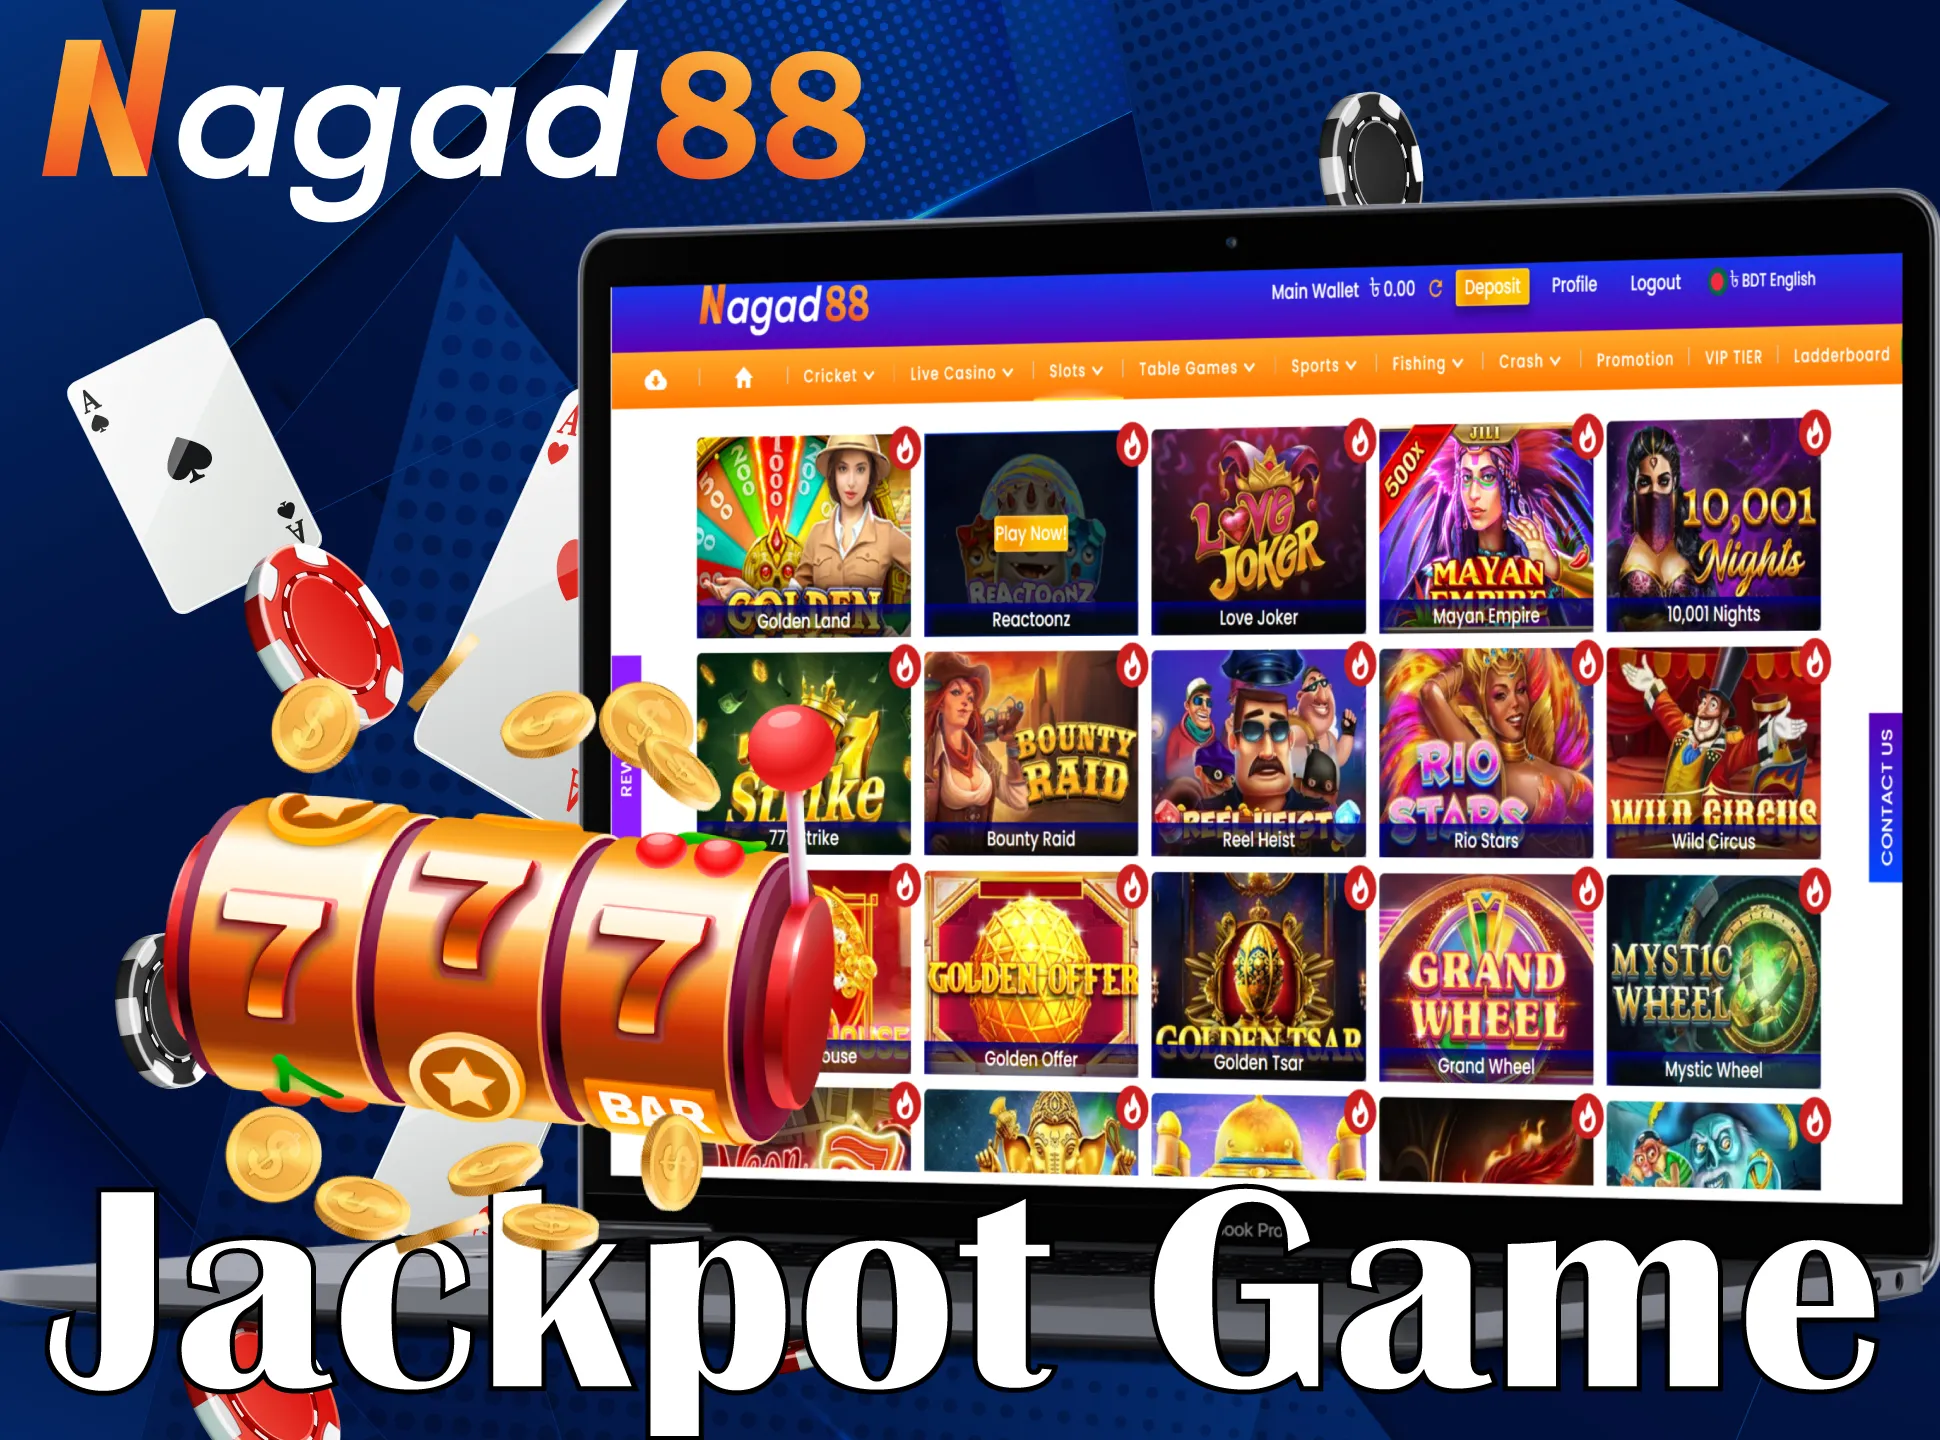 Play jackpot games at Nagad88.